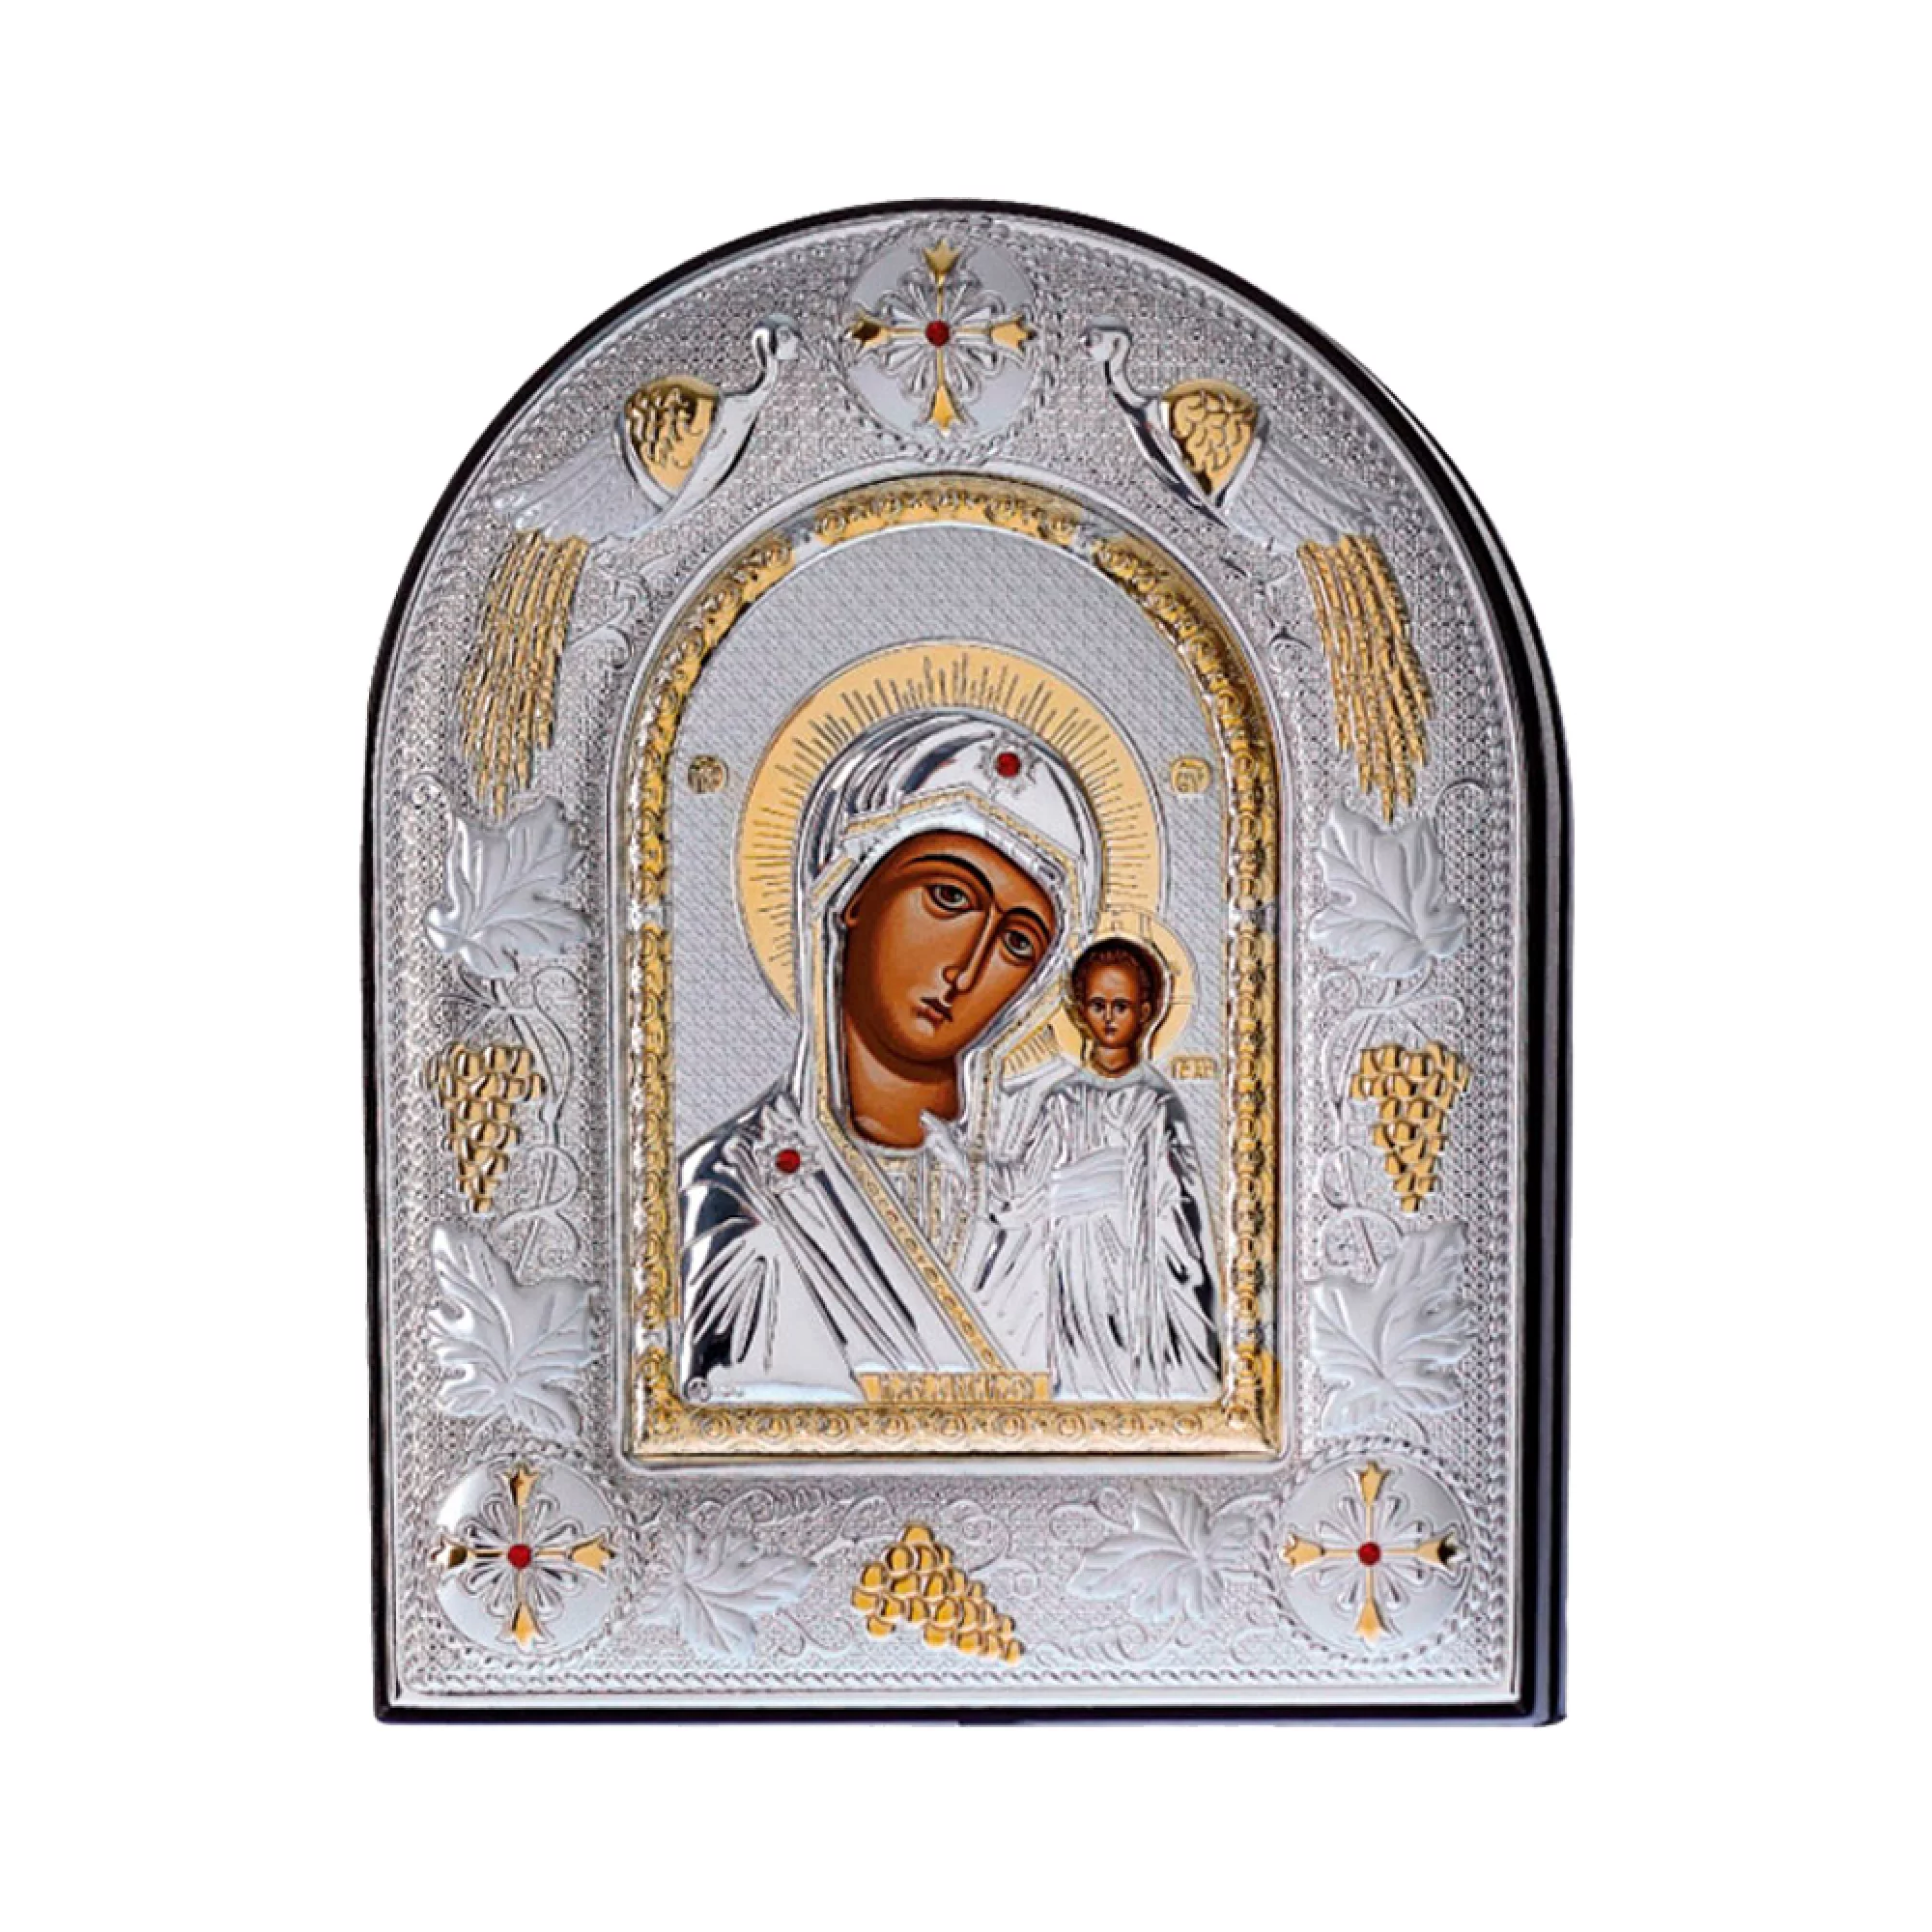 Икона Пресвятая Богородица "Казанская" 200х250 мм. - 1438391 – изображение 1